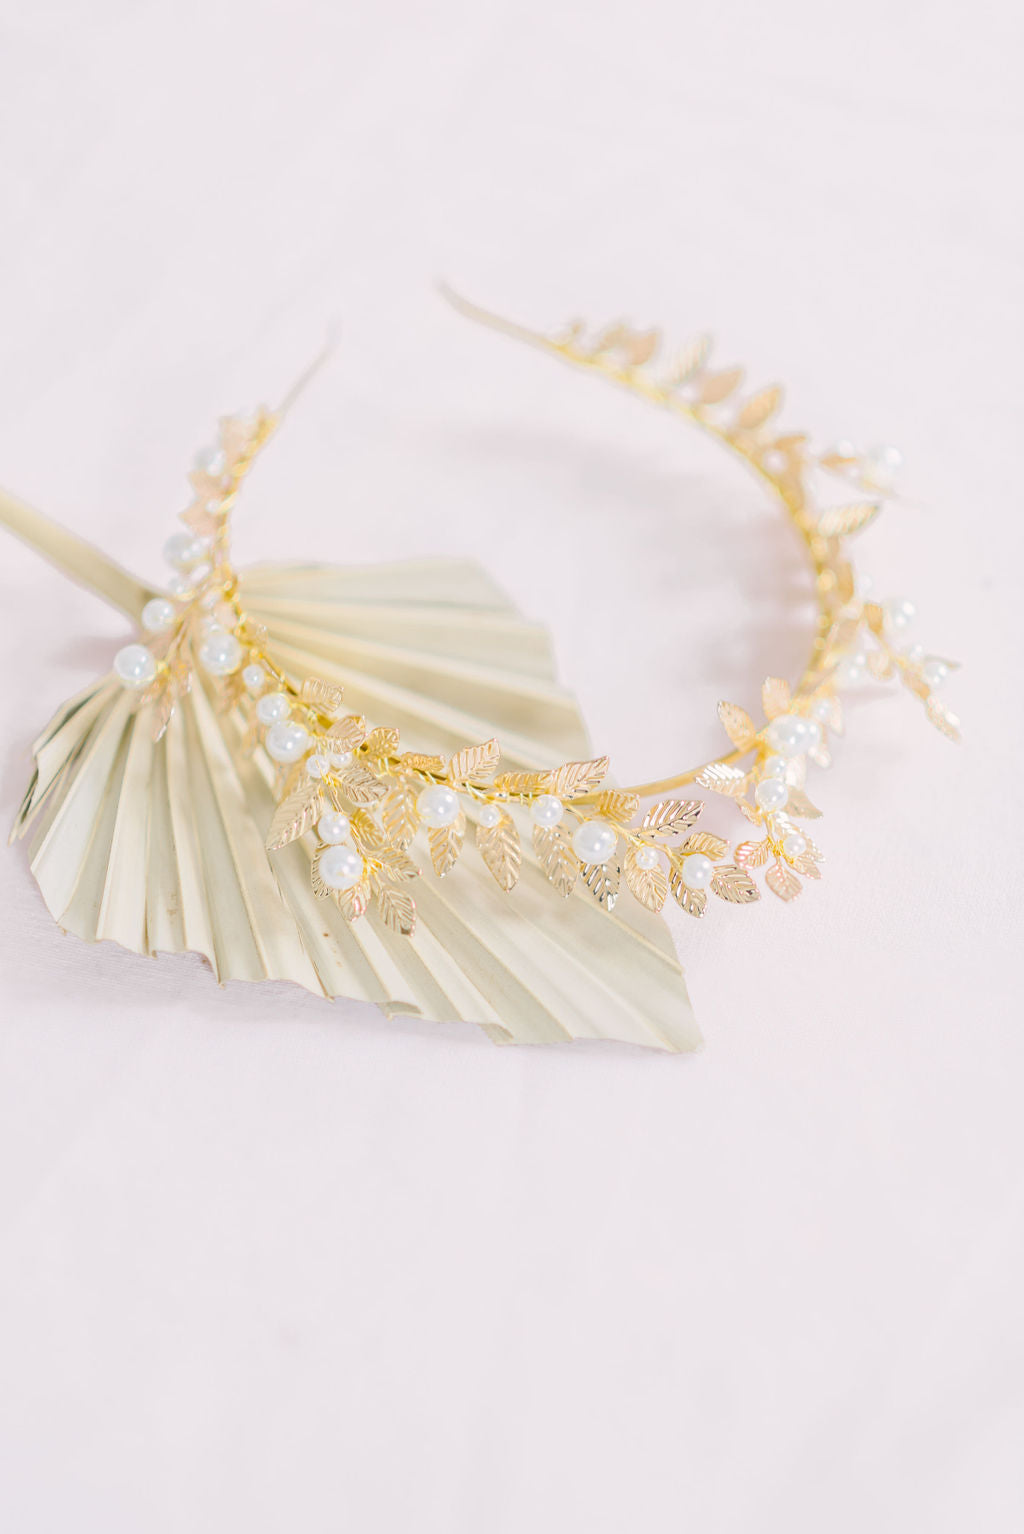 Artemis Leaf and Pearl Crown-9